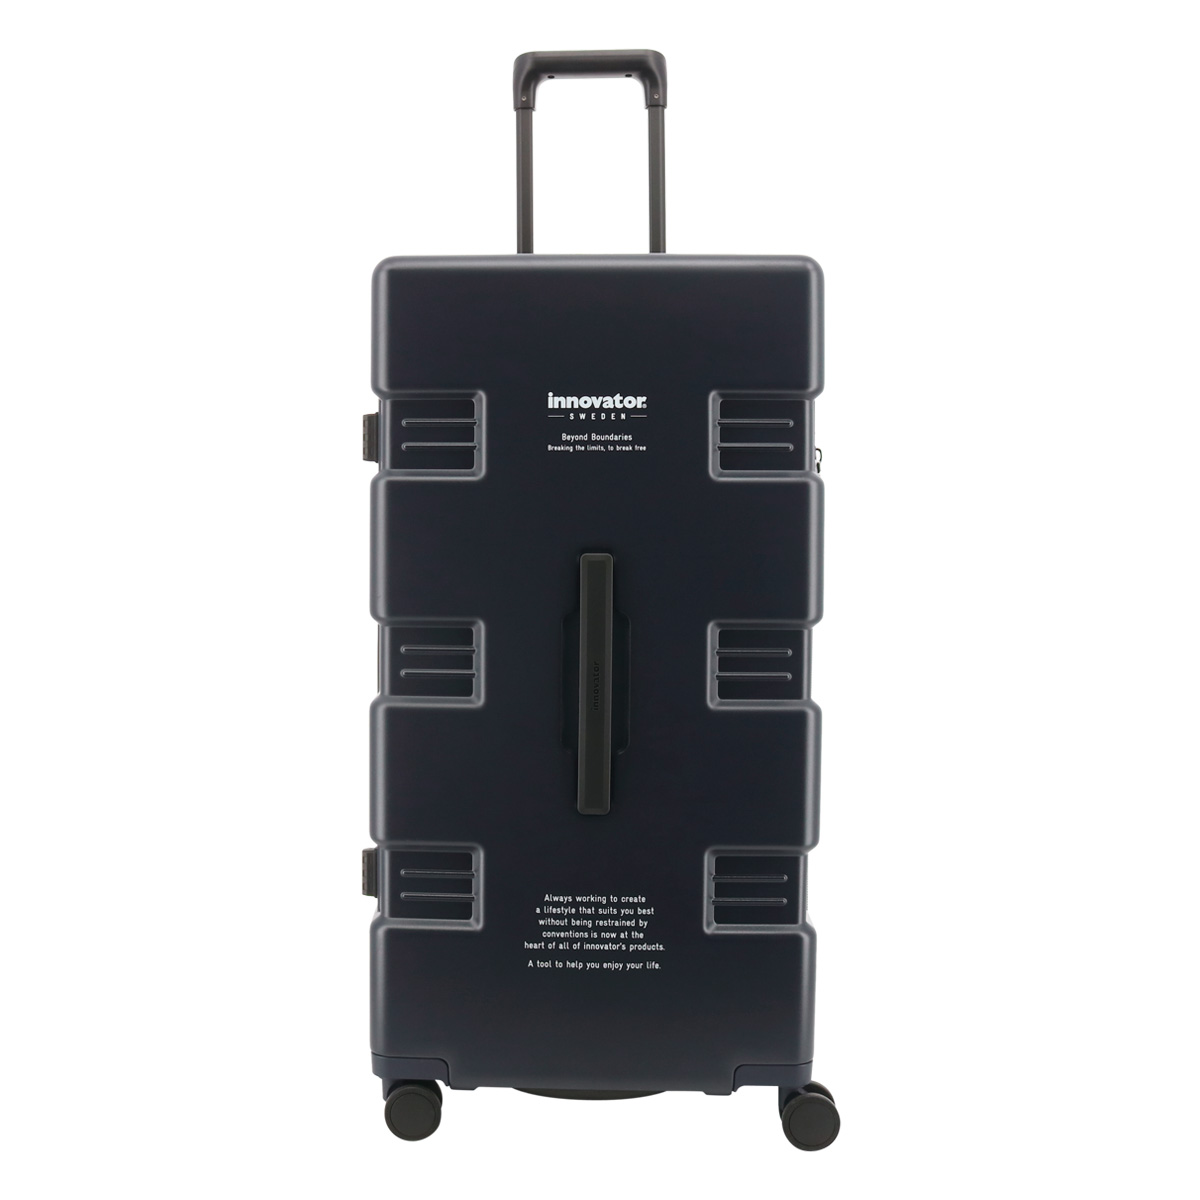 日米首脳イノベーター TSAロック付 キャリーバッグ スーツケース キャリーケース 防犯・セキュリティ用品